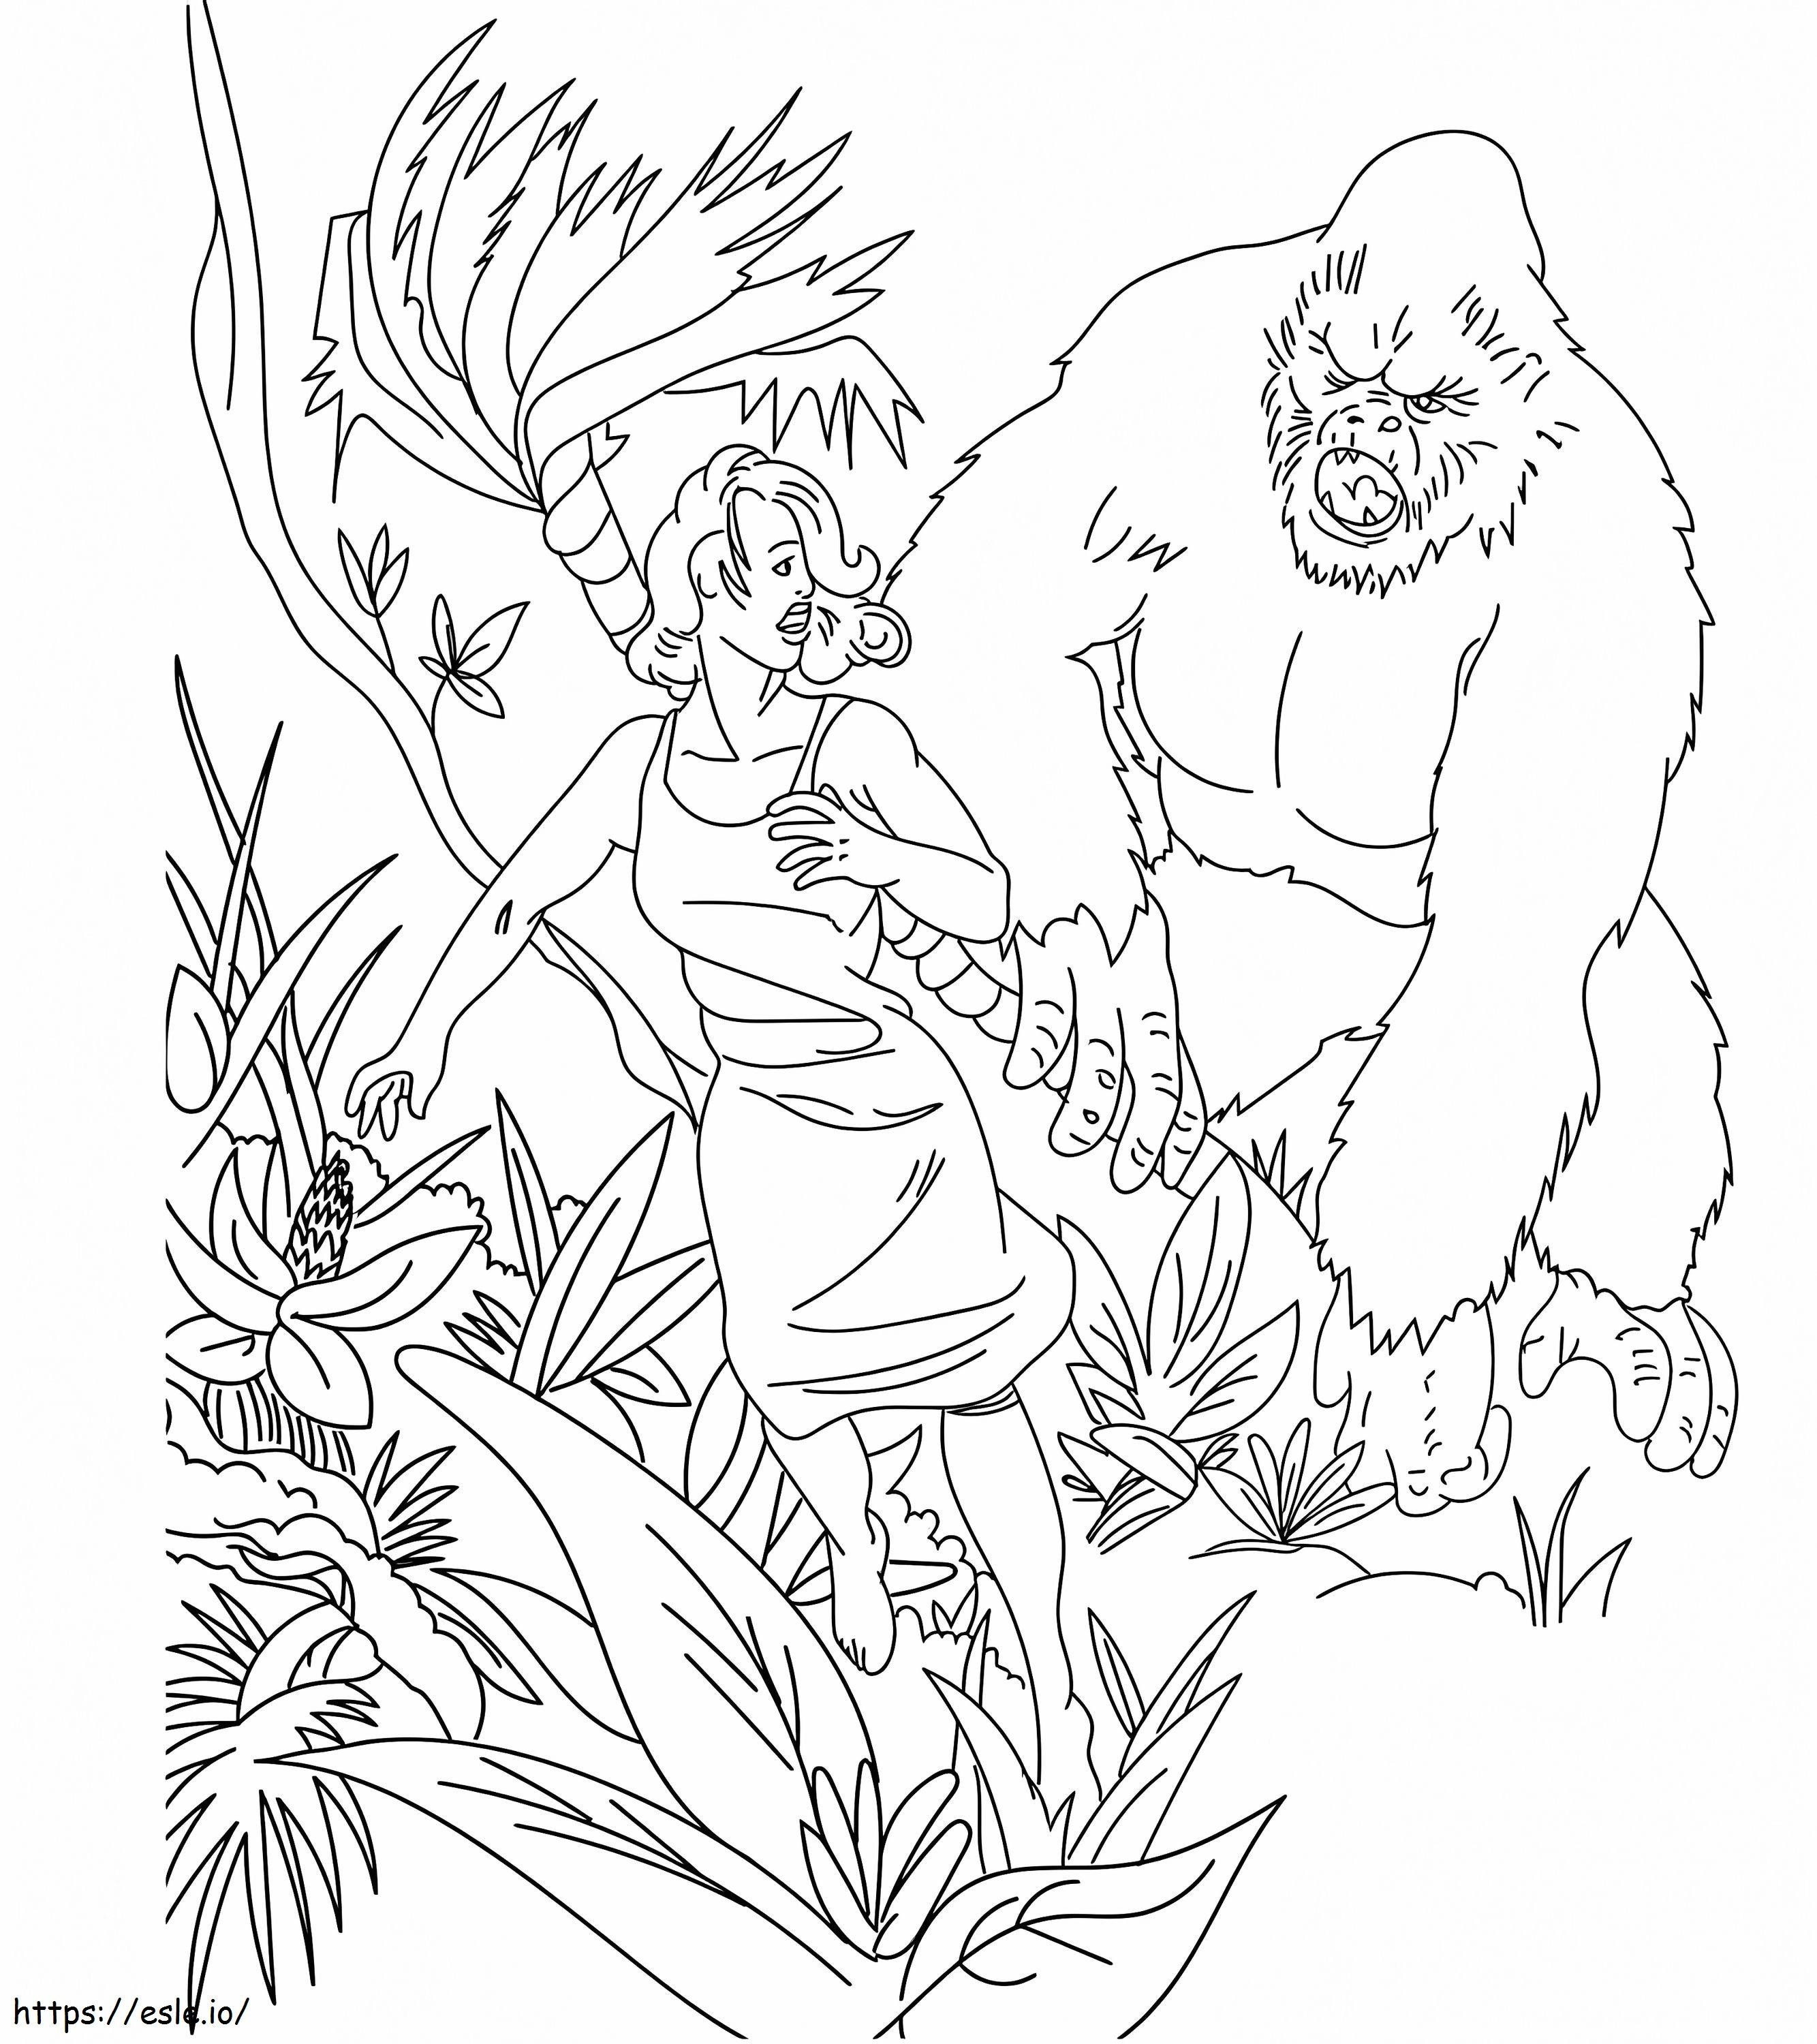 King Kong e la donna da colorare